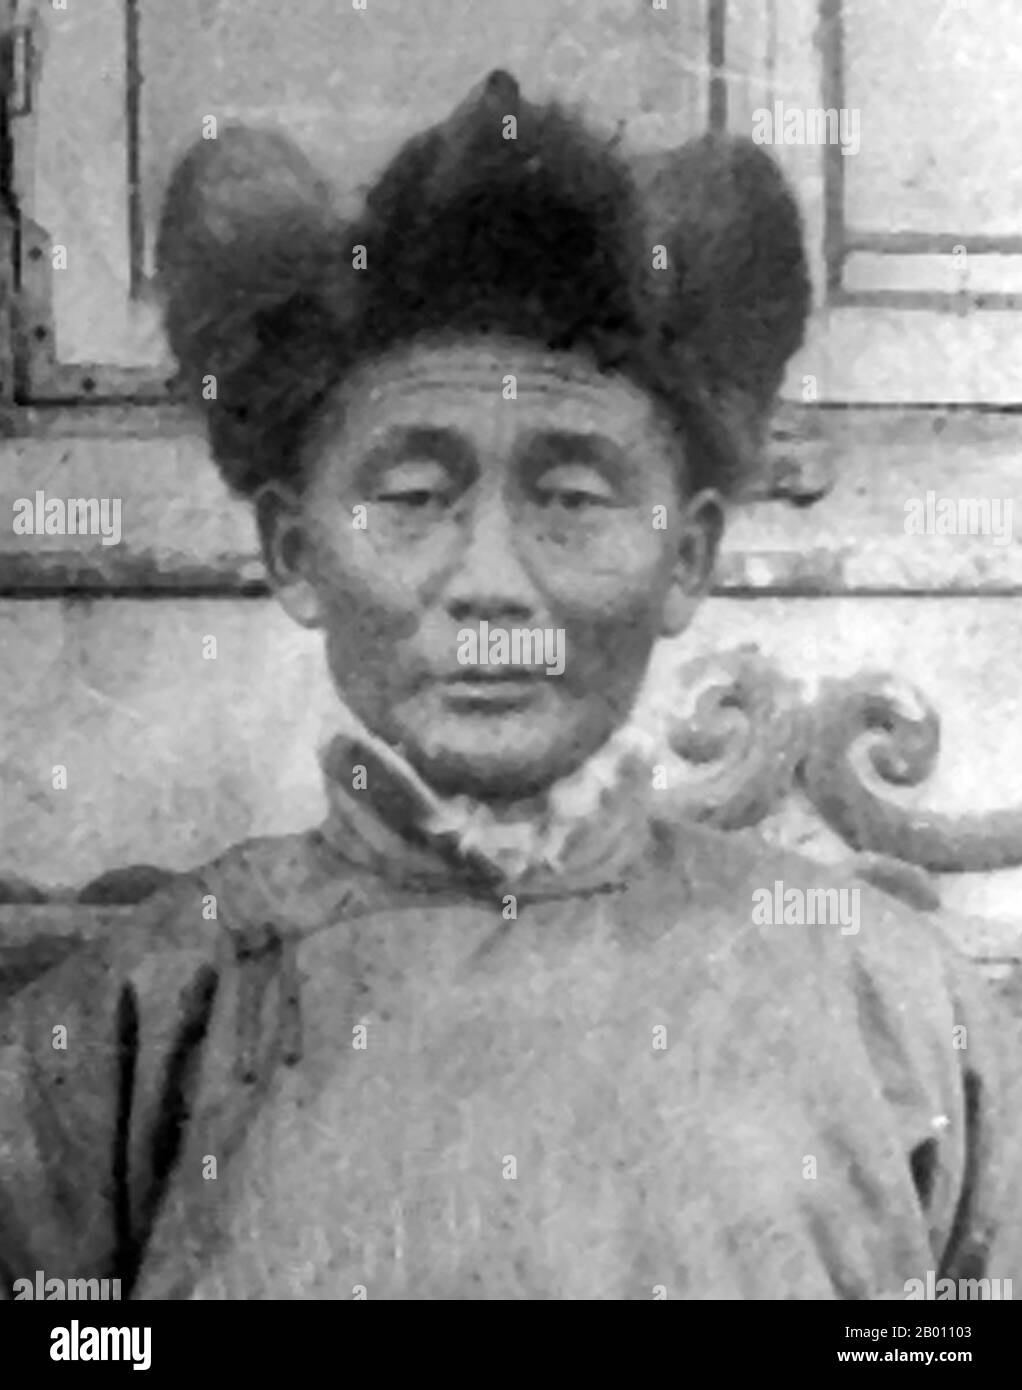 Mongolie : Soliin Danzan (1885 – 1924), révolutionnaire mongol et président du Comité central du Parti révolutionnaire populaire mongol, 1924. Soliin Danzan (1885 – 1924) était un révolutionnaire mongol et président du Comité central du Parti révolutionnaire populaire mongol. Danzan travaillait comme fonctionnaire des douanes lorsqu'il fonda l'un des deux groupes qui s'uniraient plus tard pour former le MPRP en 1919, après la dissolution de la chambre basse du Parlement. Il était connu comme l'un des sept premiers dirigeants du MPRP. Banque D'Images